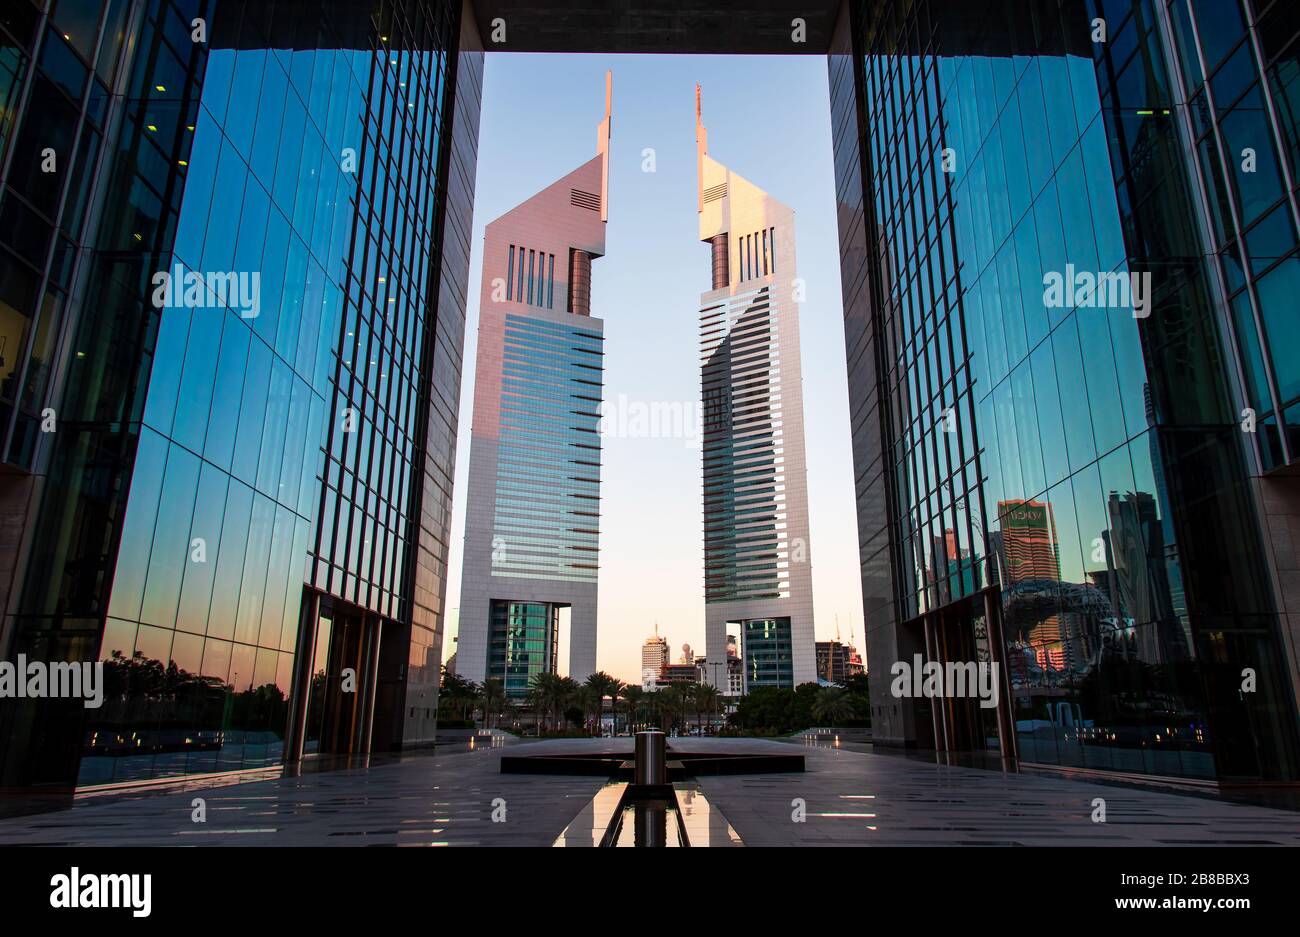 Dubai, Emirati Arabi Uniti - 14 febbraio 2020: Il Dubai International Financial Centre DIFC e gli Emirati torri nel centro di Dubai Emirati Arabi Uniti Foto Stock